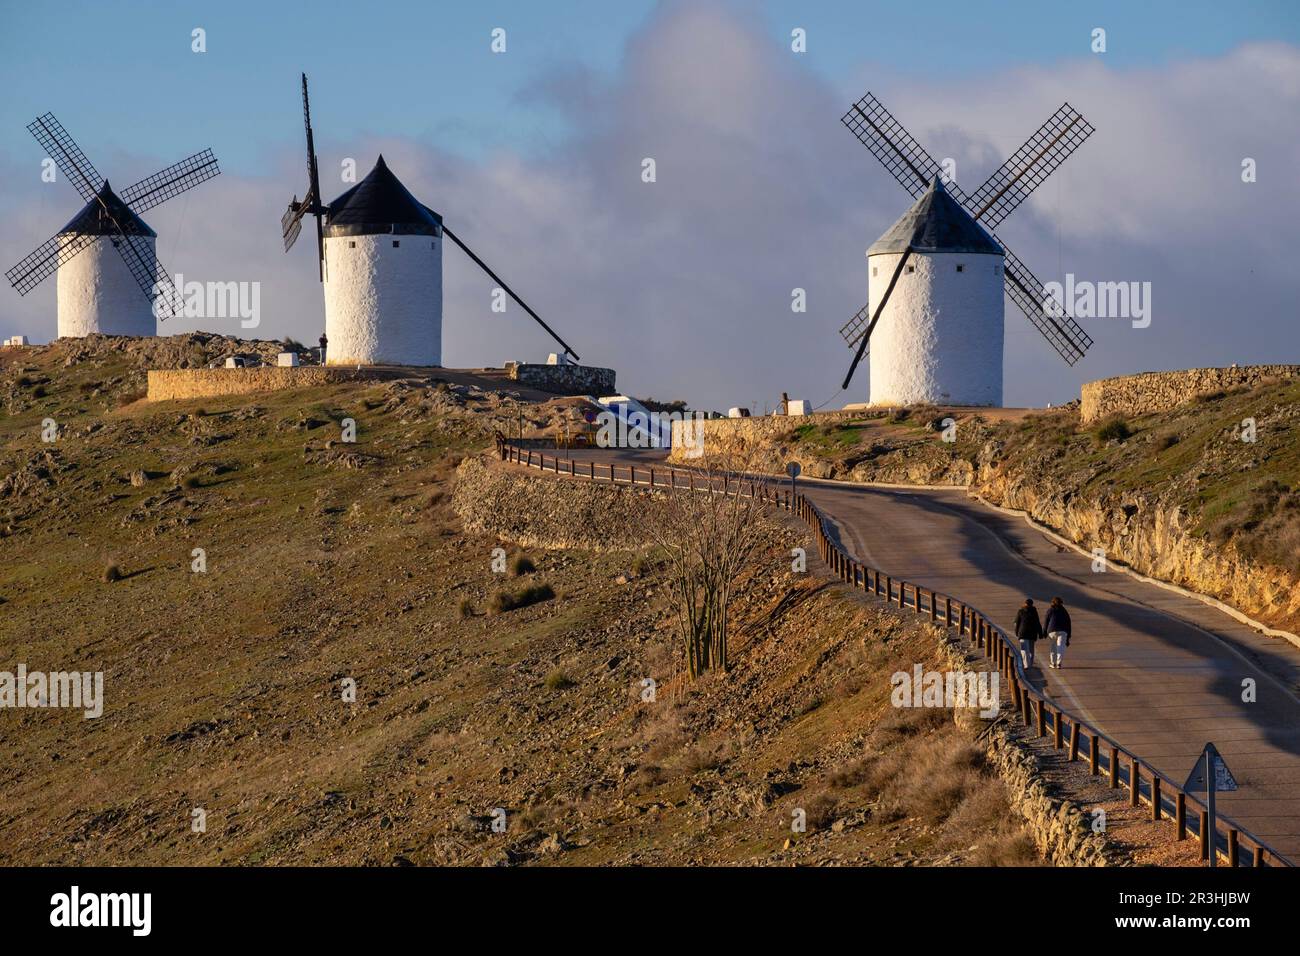 molinos de Consuegra, cerro Calderico, Consuegra, provincia de Toledo, Castilla-La Mancha, Spain. Stock Photo